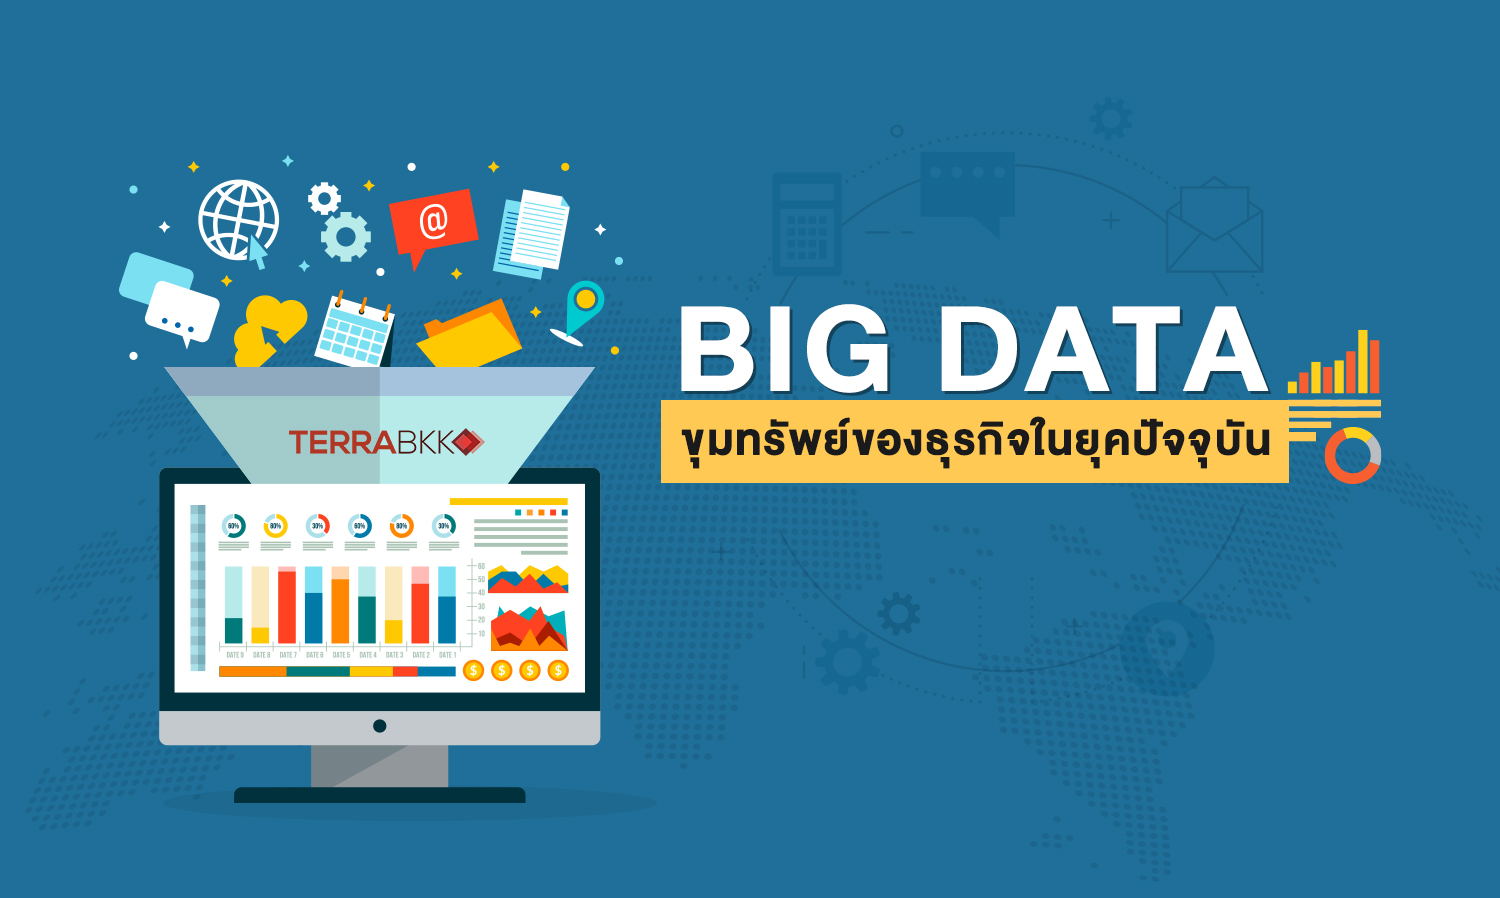 Big Data คือขุมทรัพย์ของธุรกิจในยุคปัจจุบัน